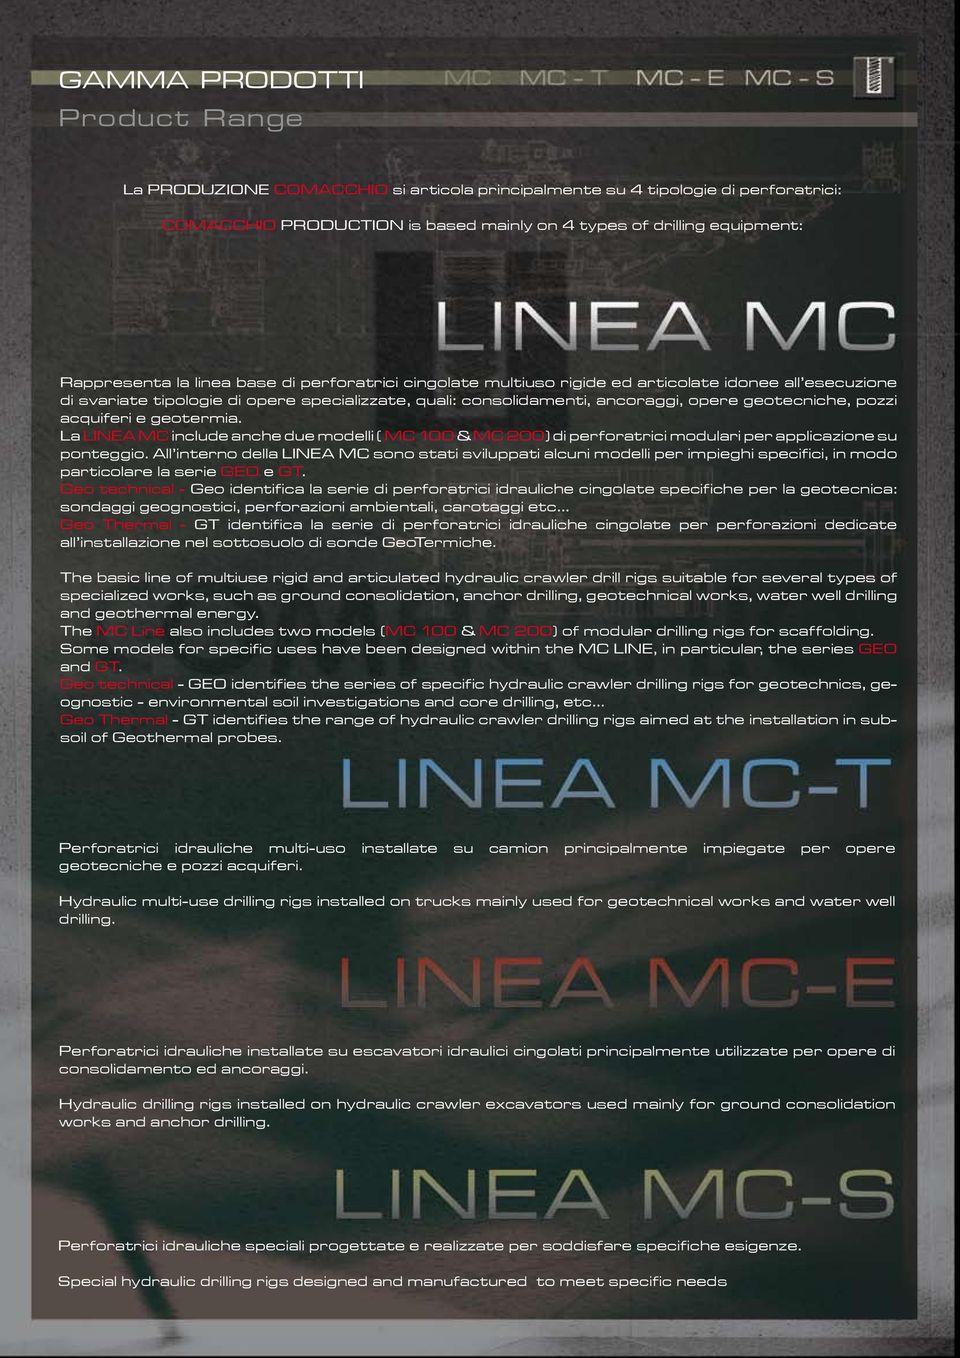 La LINEA MC include anche due modelli ( MC 100 & MC 200) di perforatrici modulari per applicazione su ponteggio.